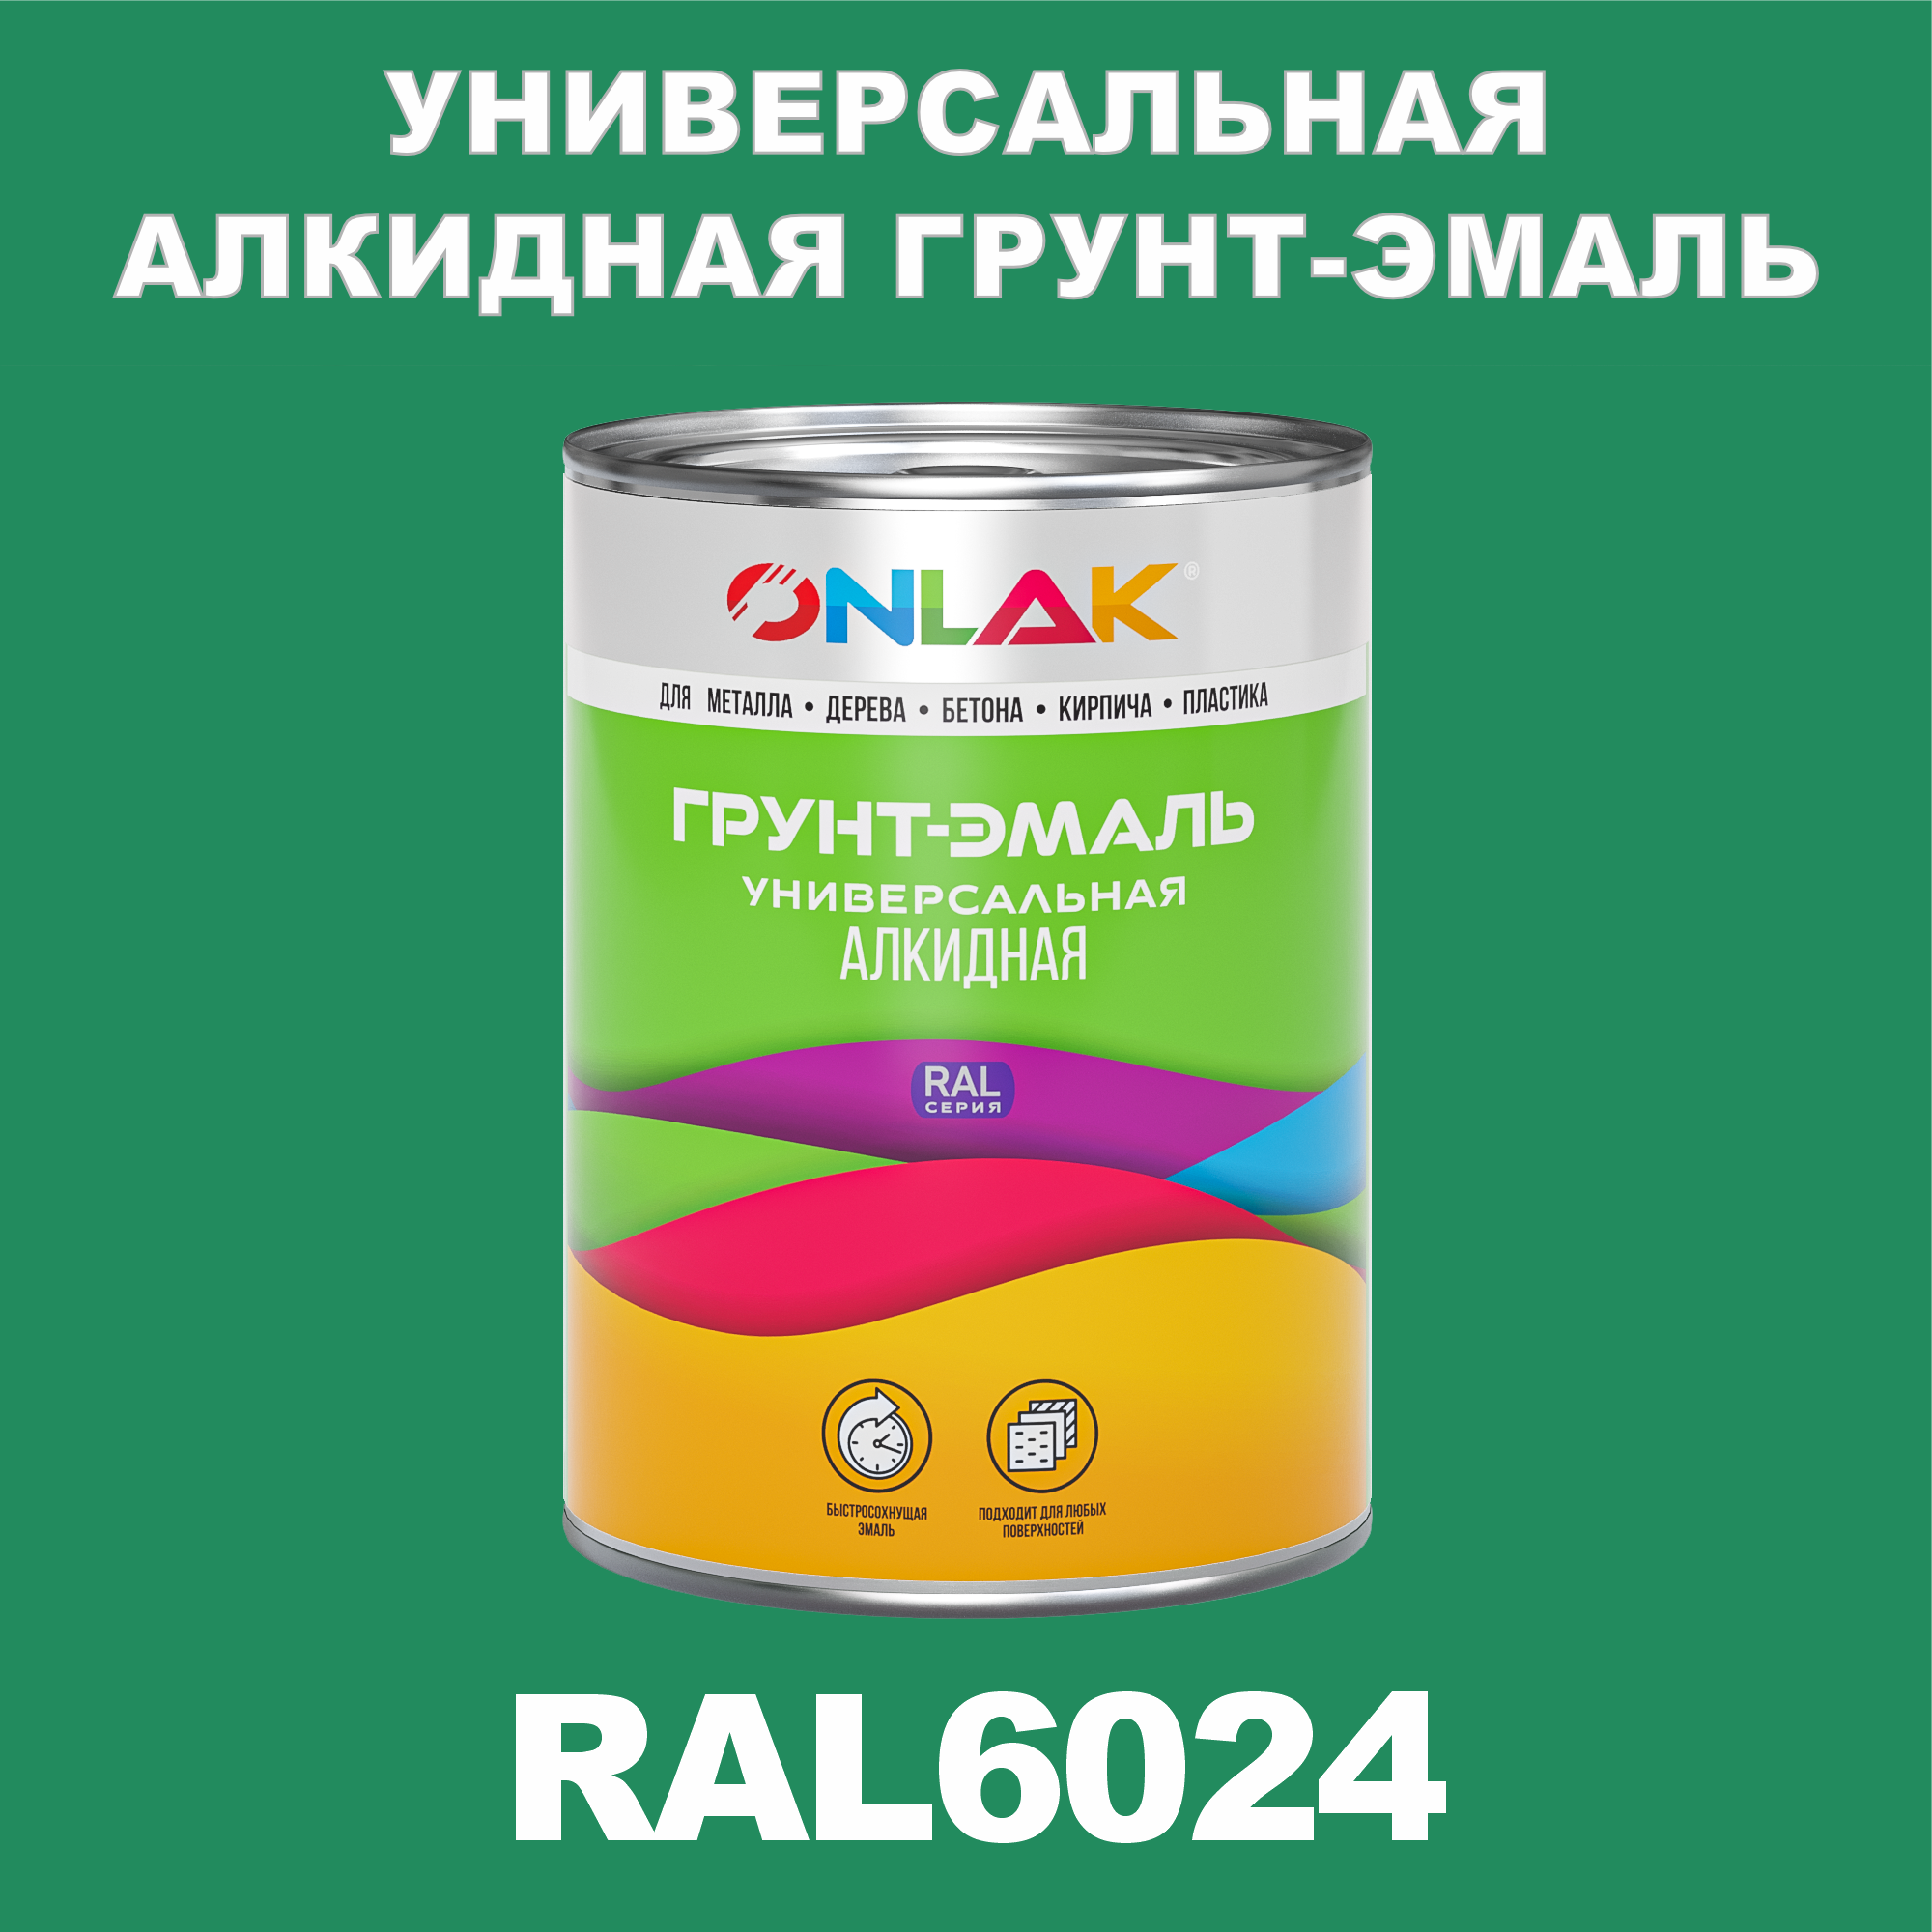 Грунт-эмаль ONLAK 1К RAL6024 антикоррозионная алкидная по металлу по ржавчине 1 кг грунт эмаль neomid по ржавчине быстросохнущая алкидная серая 0 9 кг